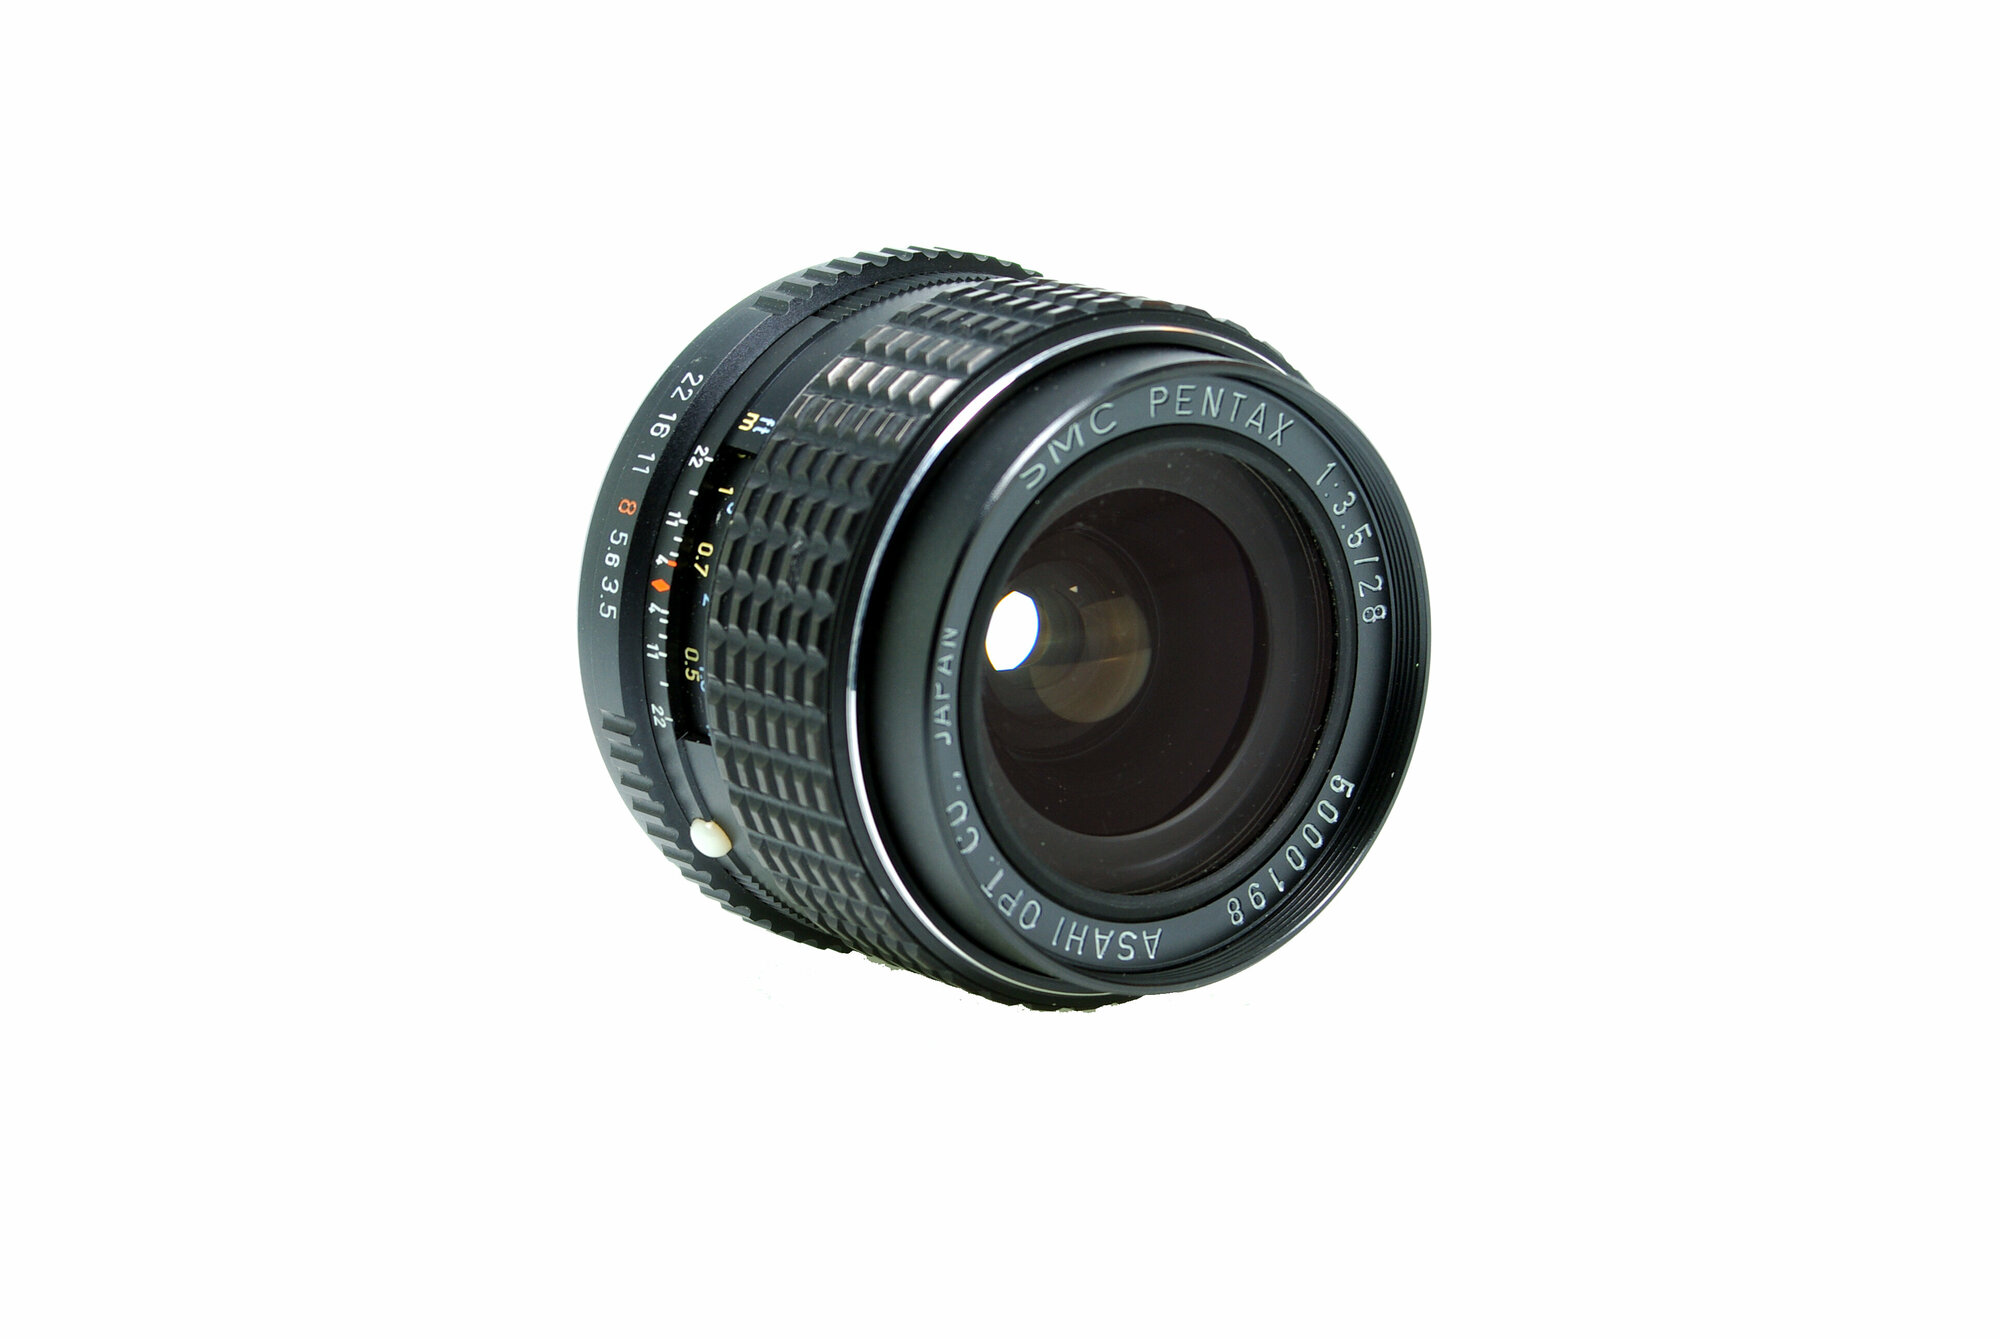 SMC Pentax 28mm f3.5